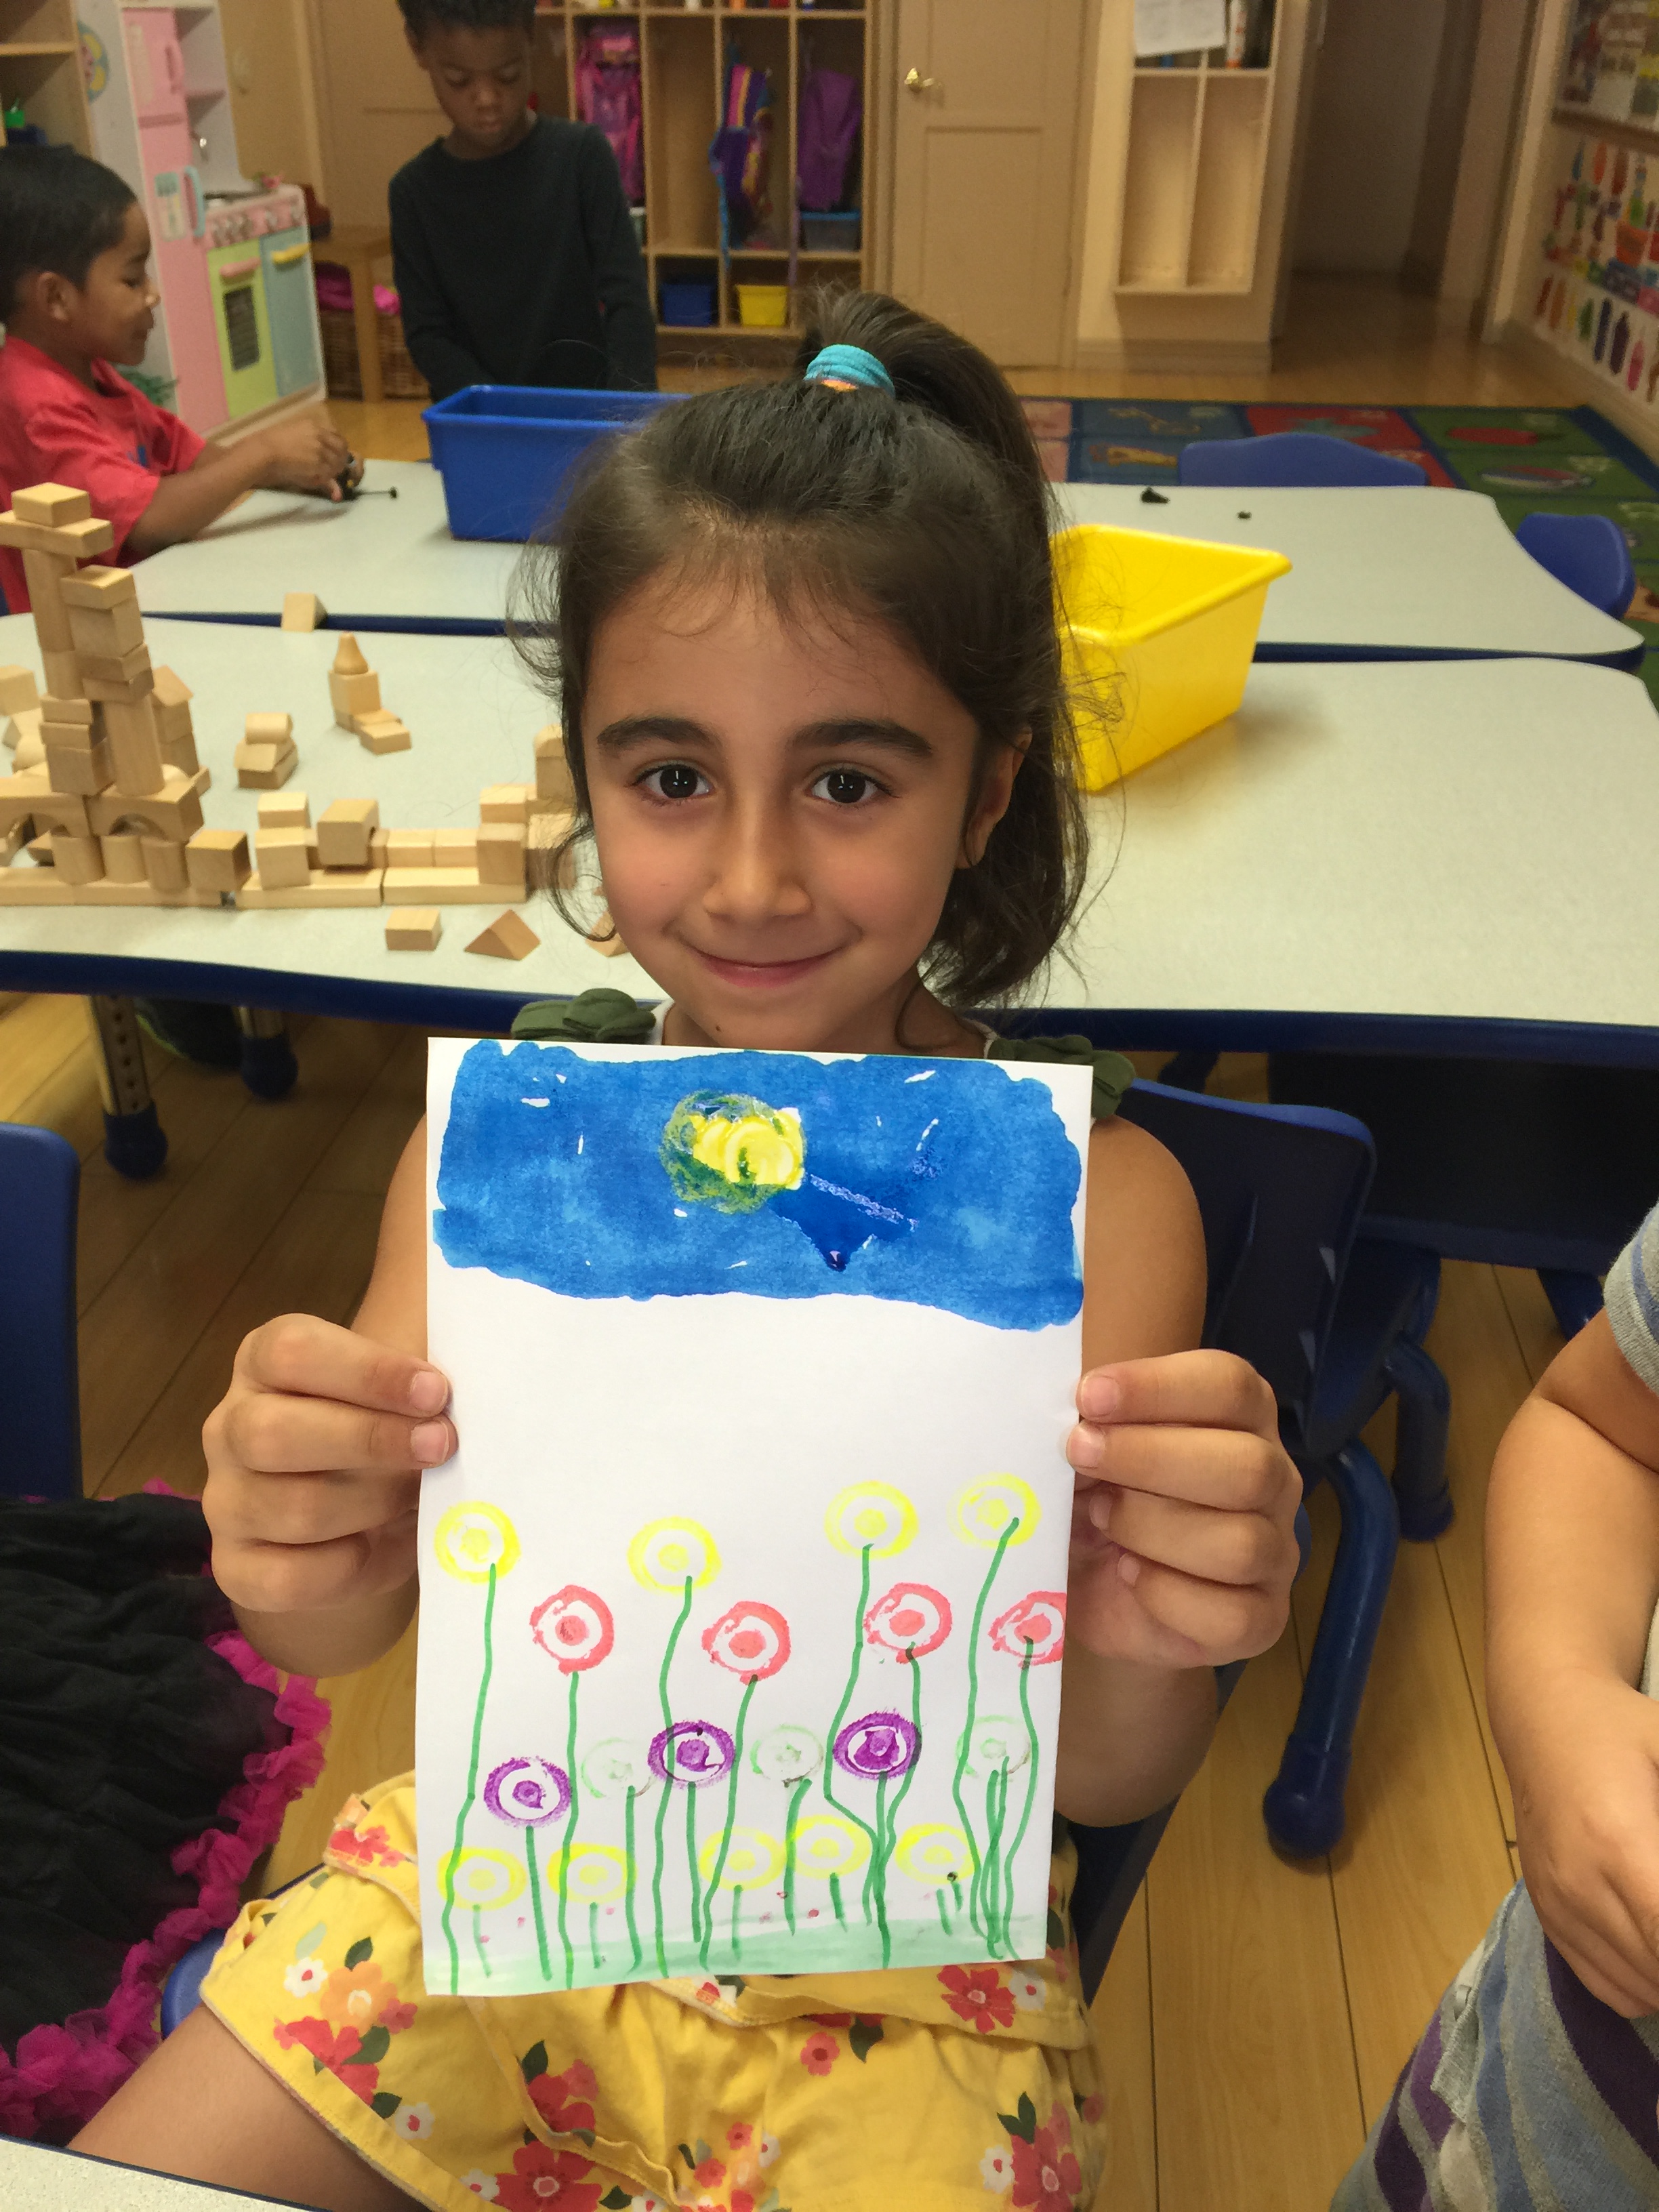 Fun art activity at Sherman Oaks preschool